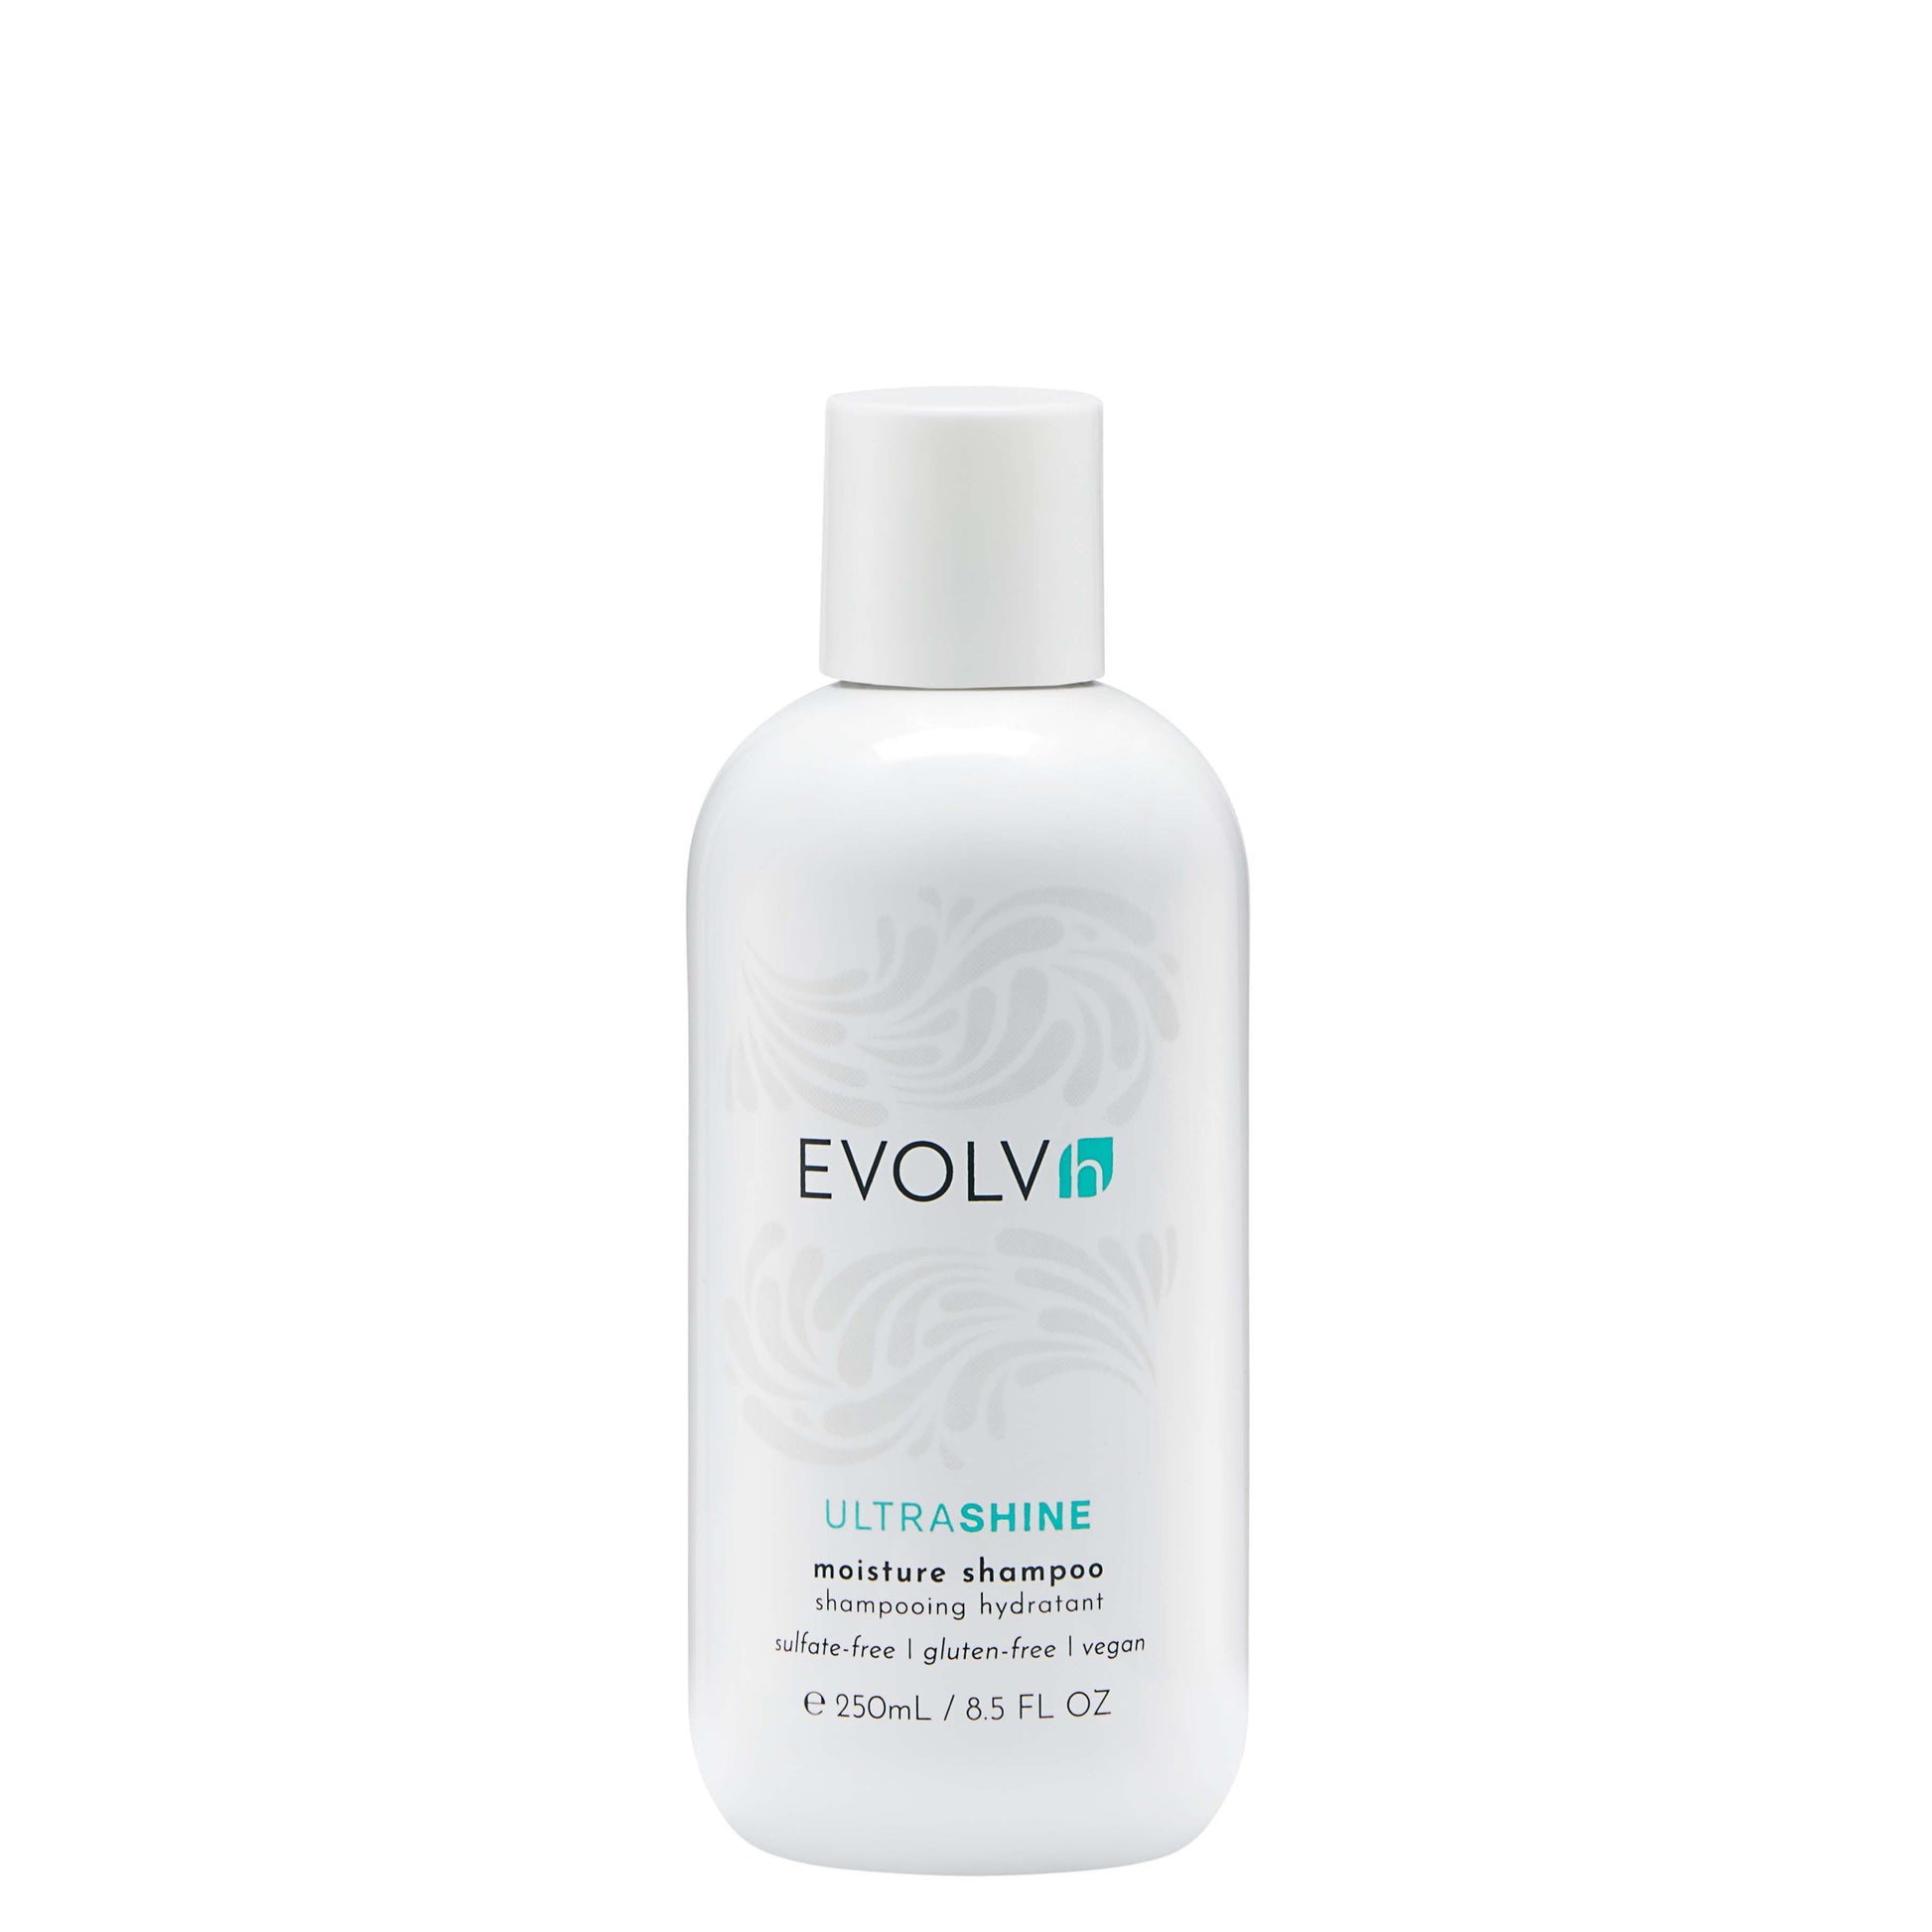 EVOLVH UltraShine Moisture Shampoo full size